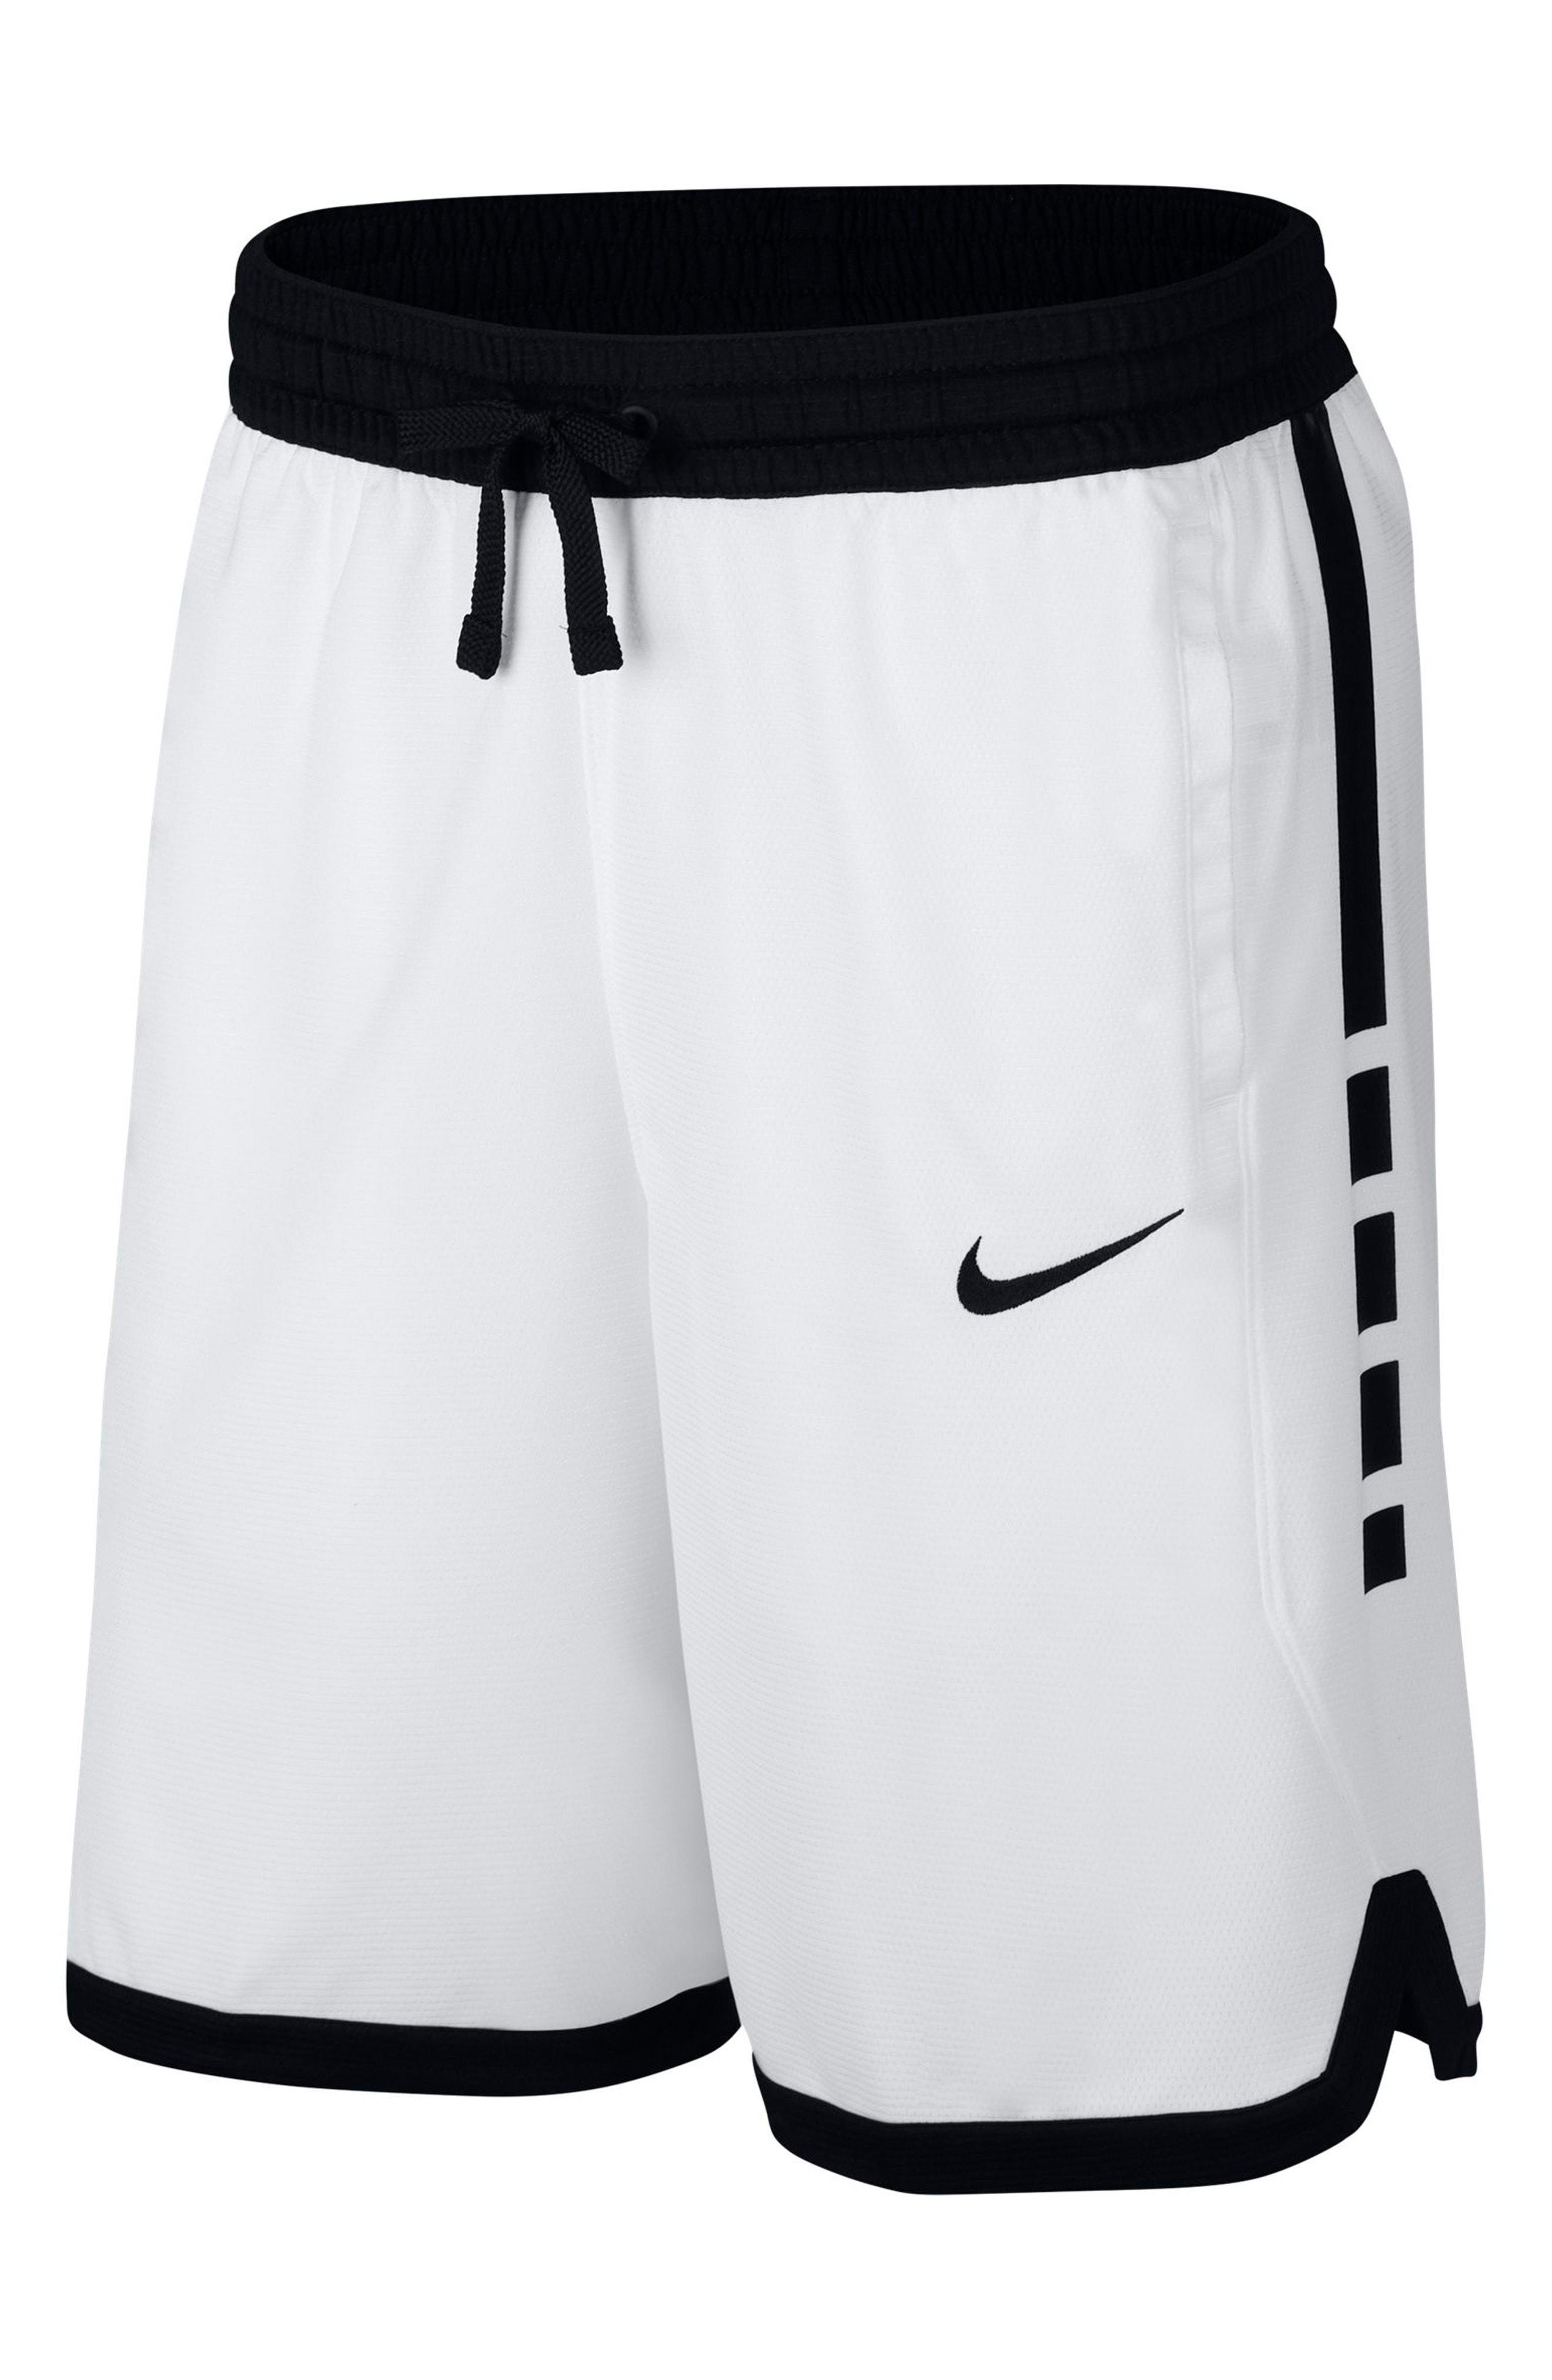 Lyst - Nike Dry Elite Stripe Basketball Shorts in White for Men